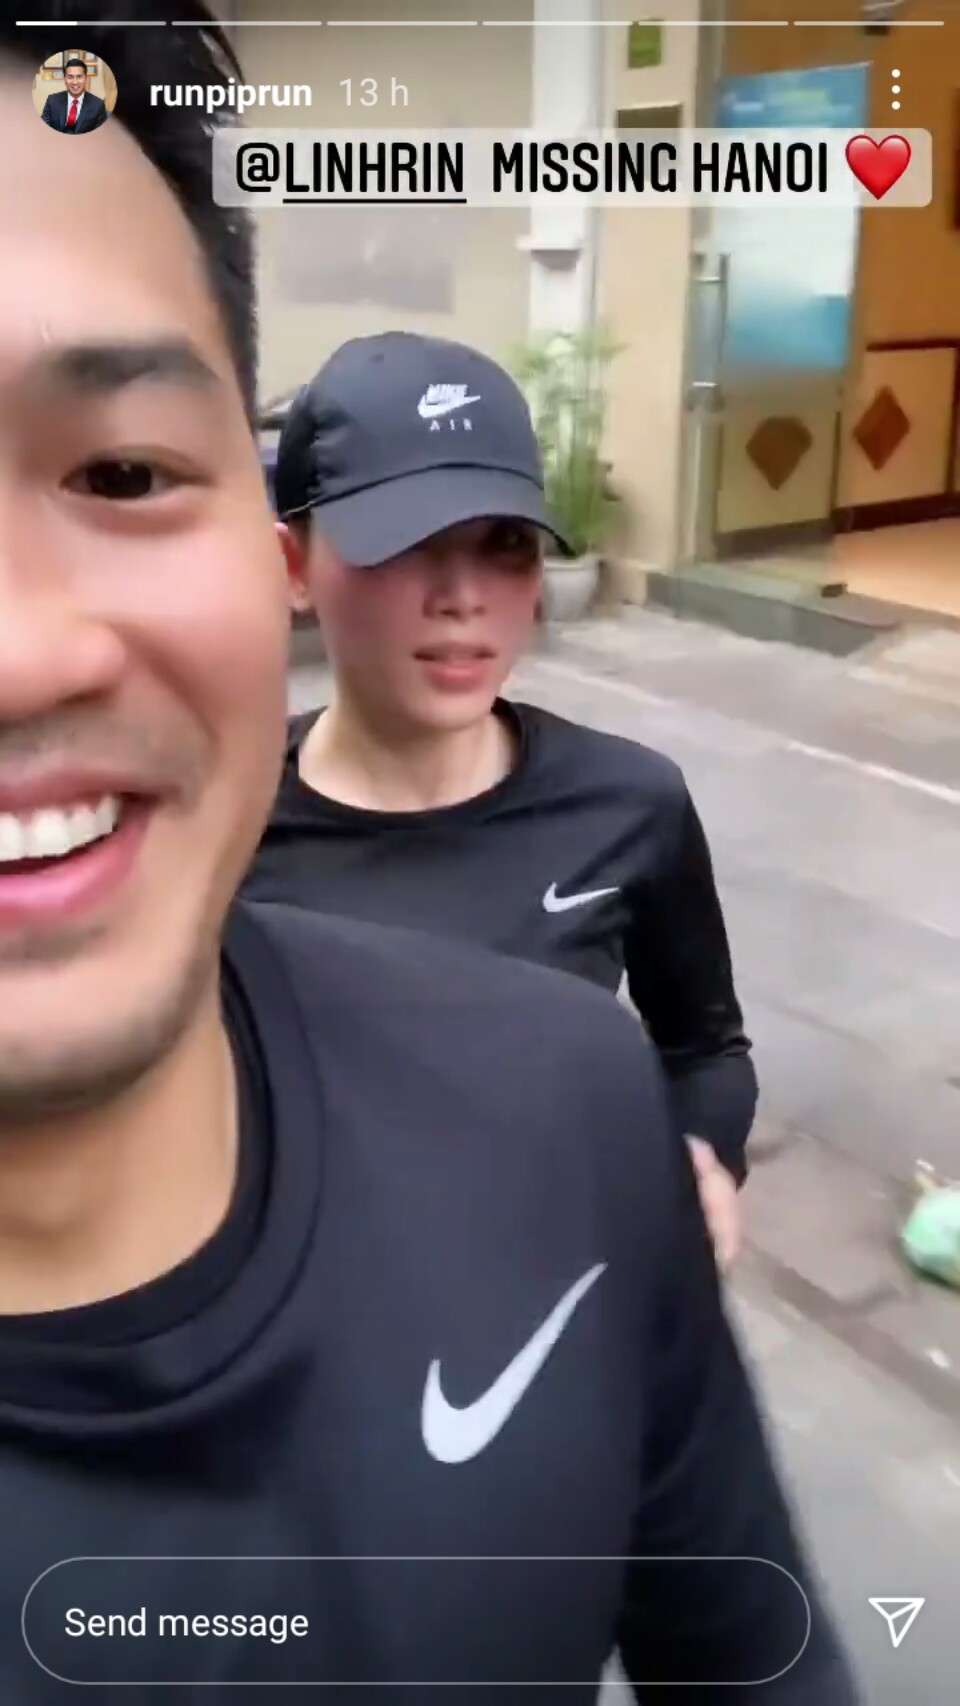 Phillip Nguyễn đăng clip chạy bộ cùng Linh Rin, lộ luôn mặt mộc của bạn gái - Ảnh 1